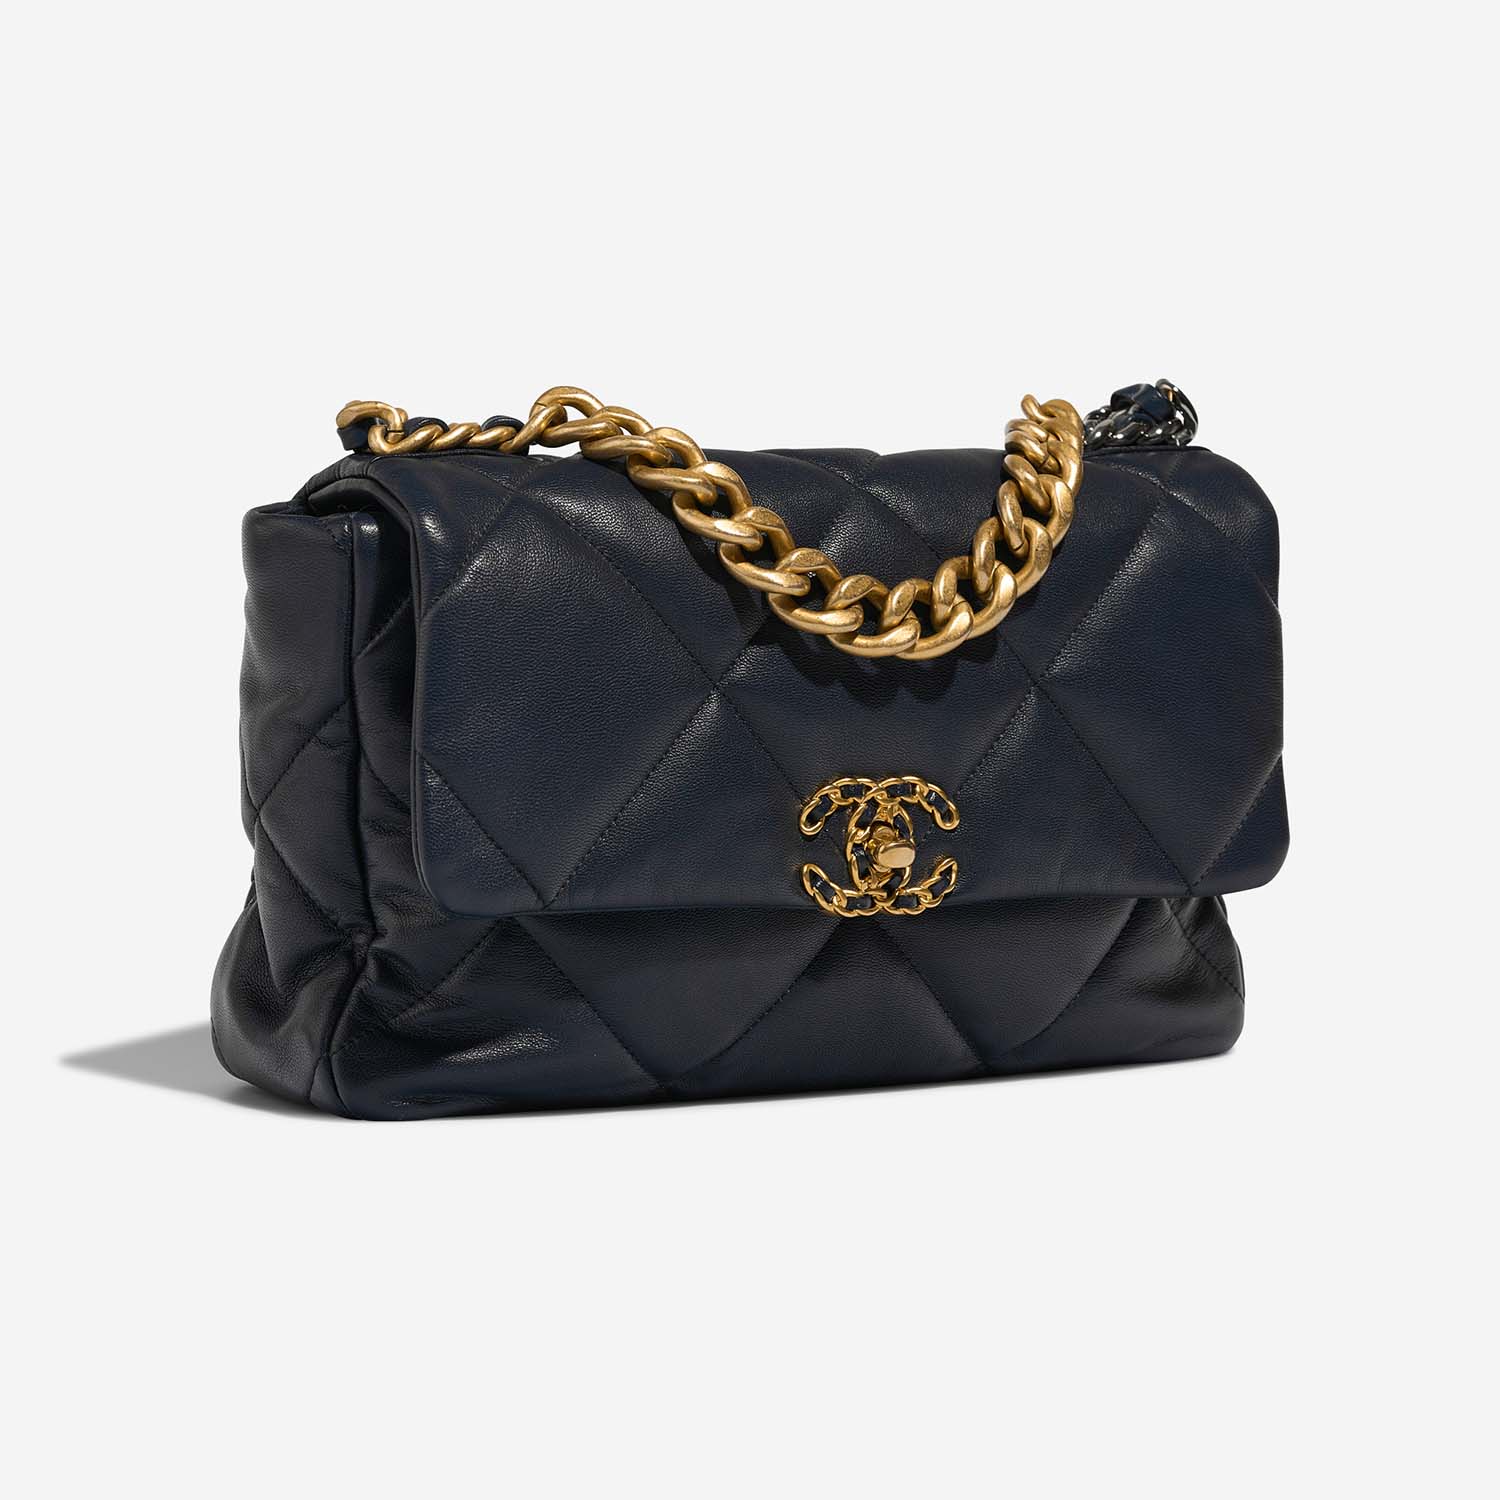 Chanel 19 Large Navy Side Front | Verkaufen Sie Ihre Designer-Tasche auf Saclab.com